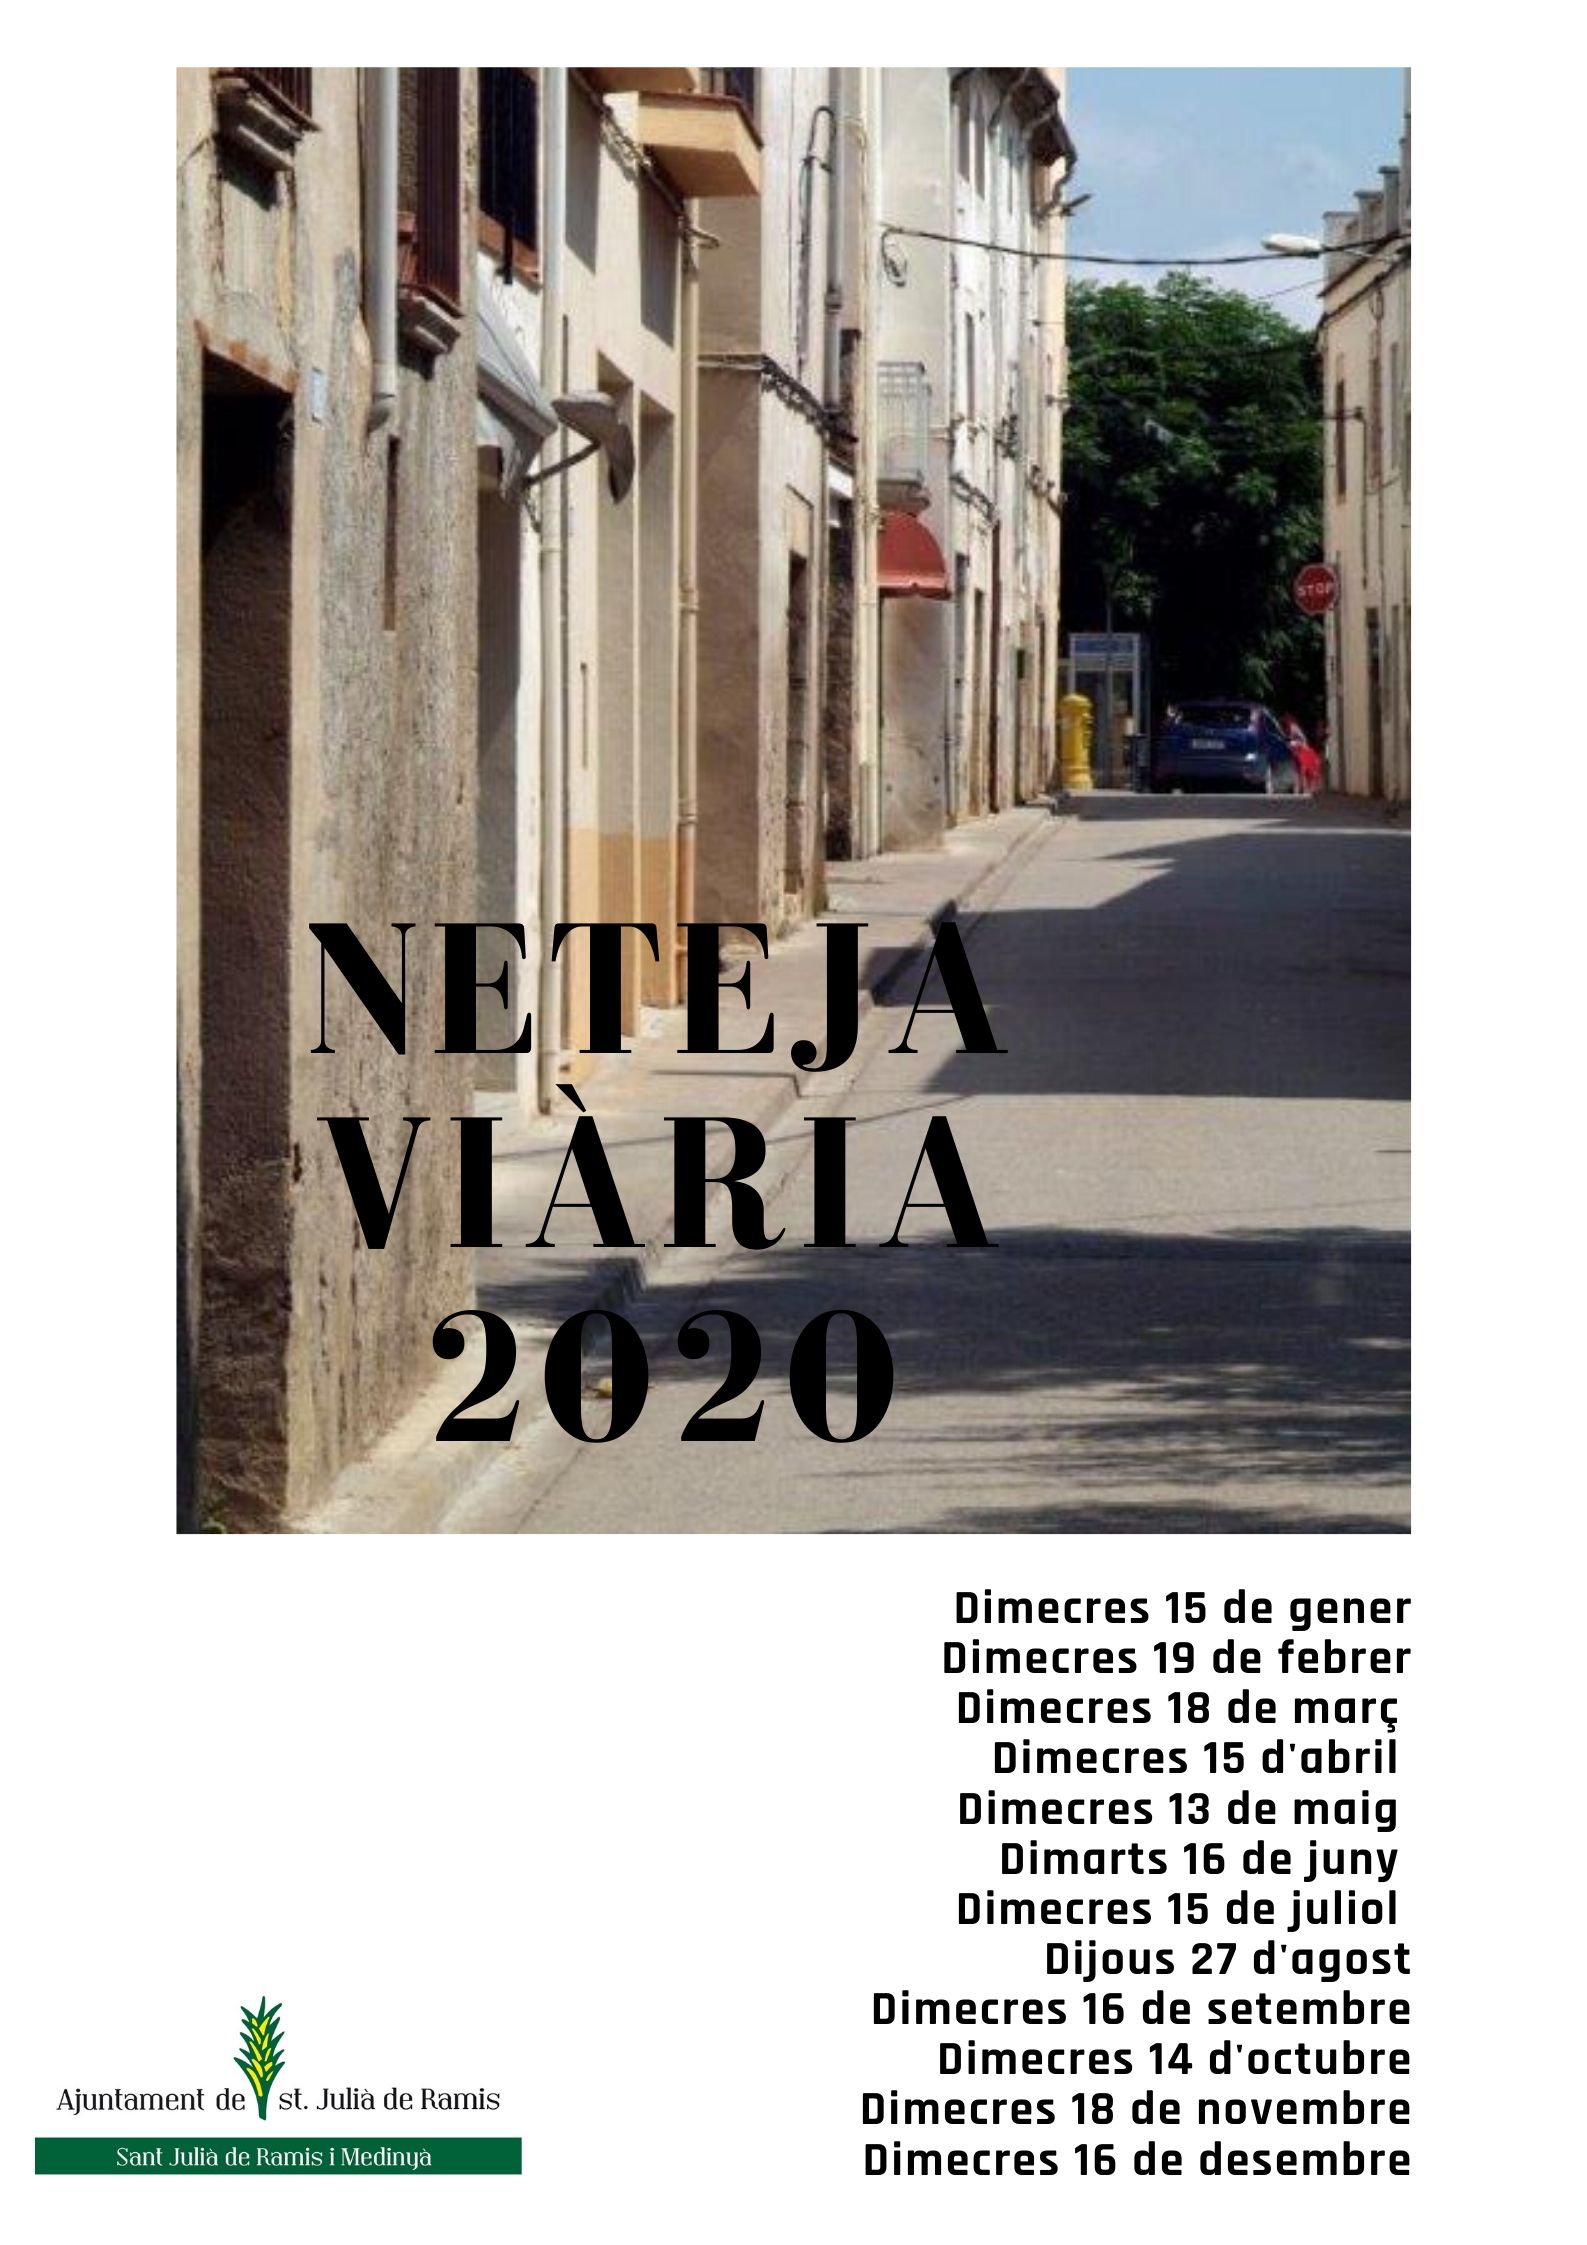 NETEJA VIÀRIA 2020